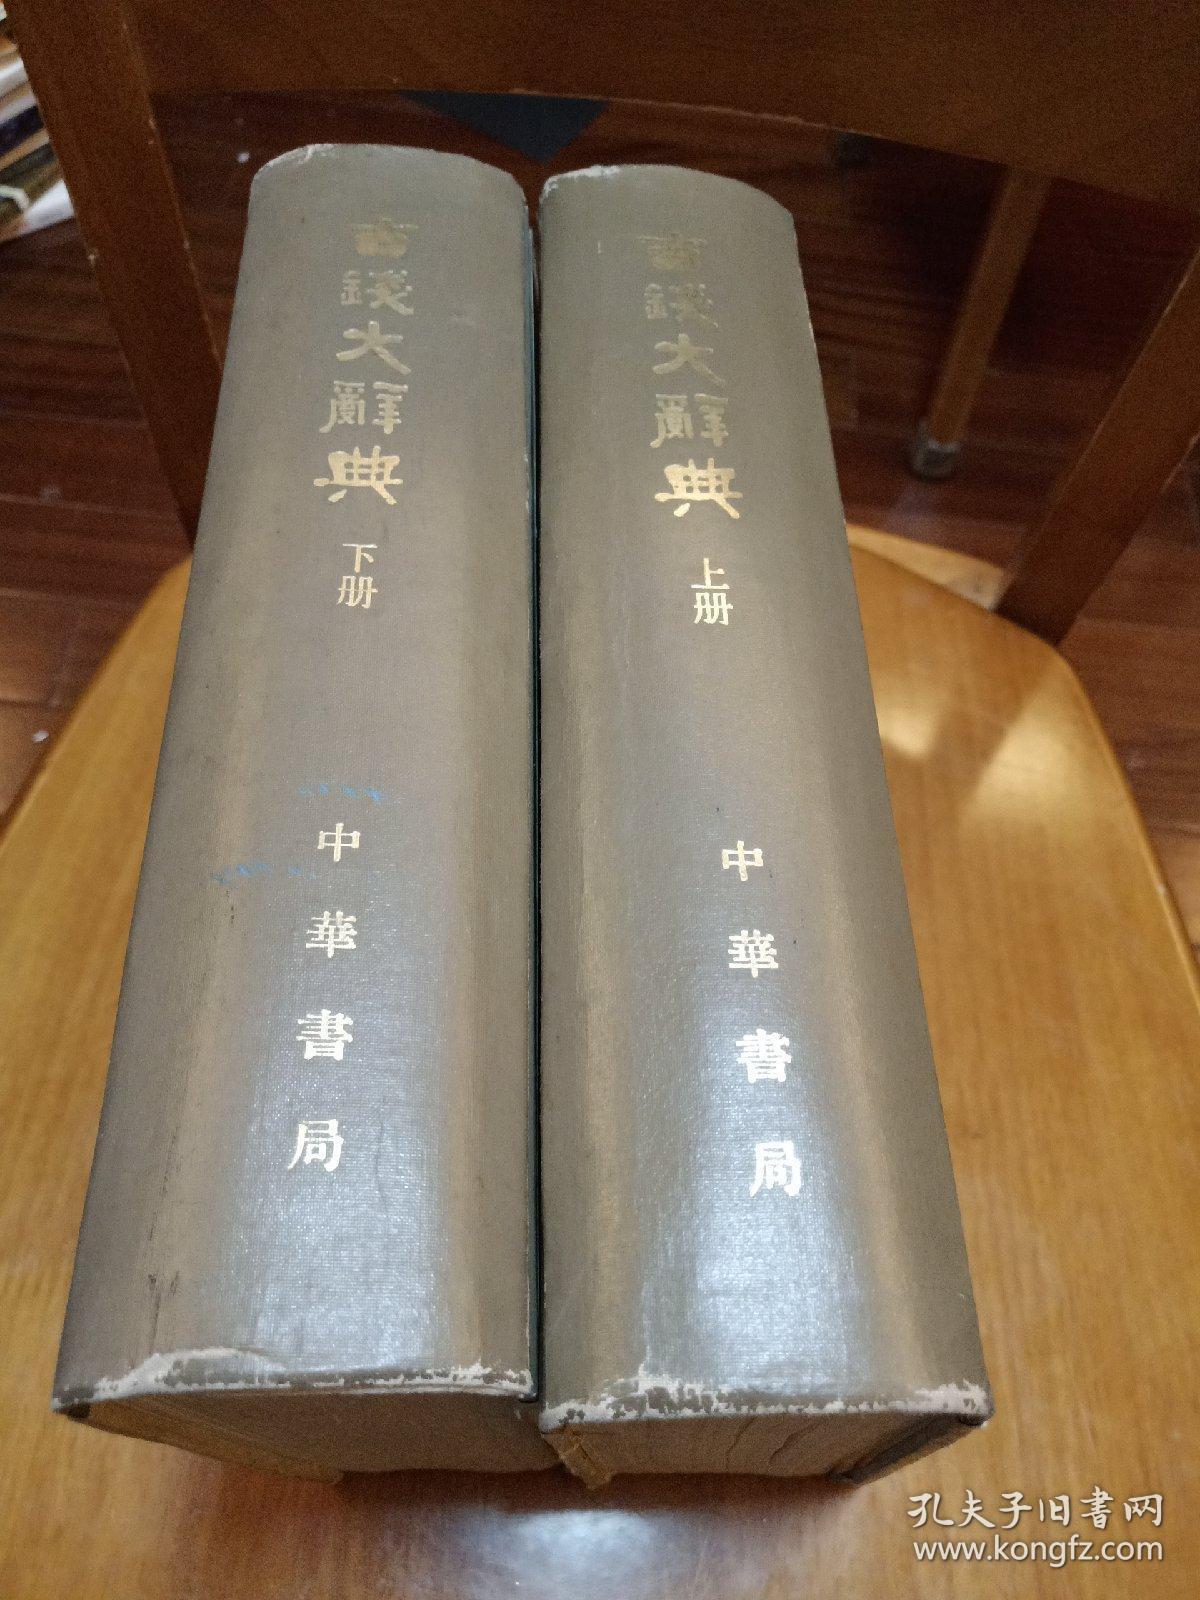 古钱大辞典  1982一版一印 中华书局 丁福保编